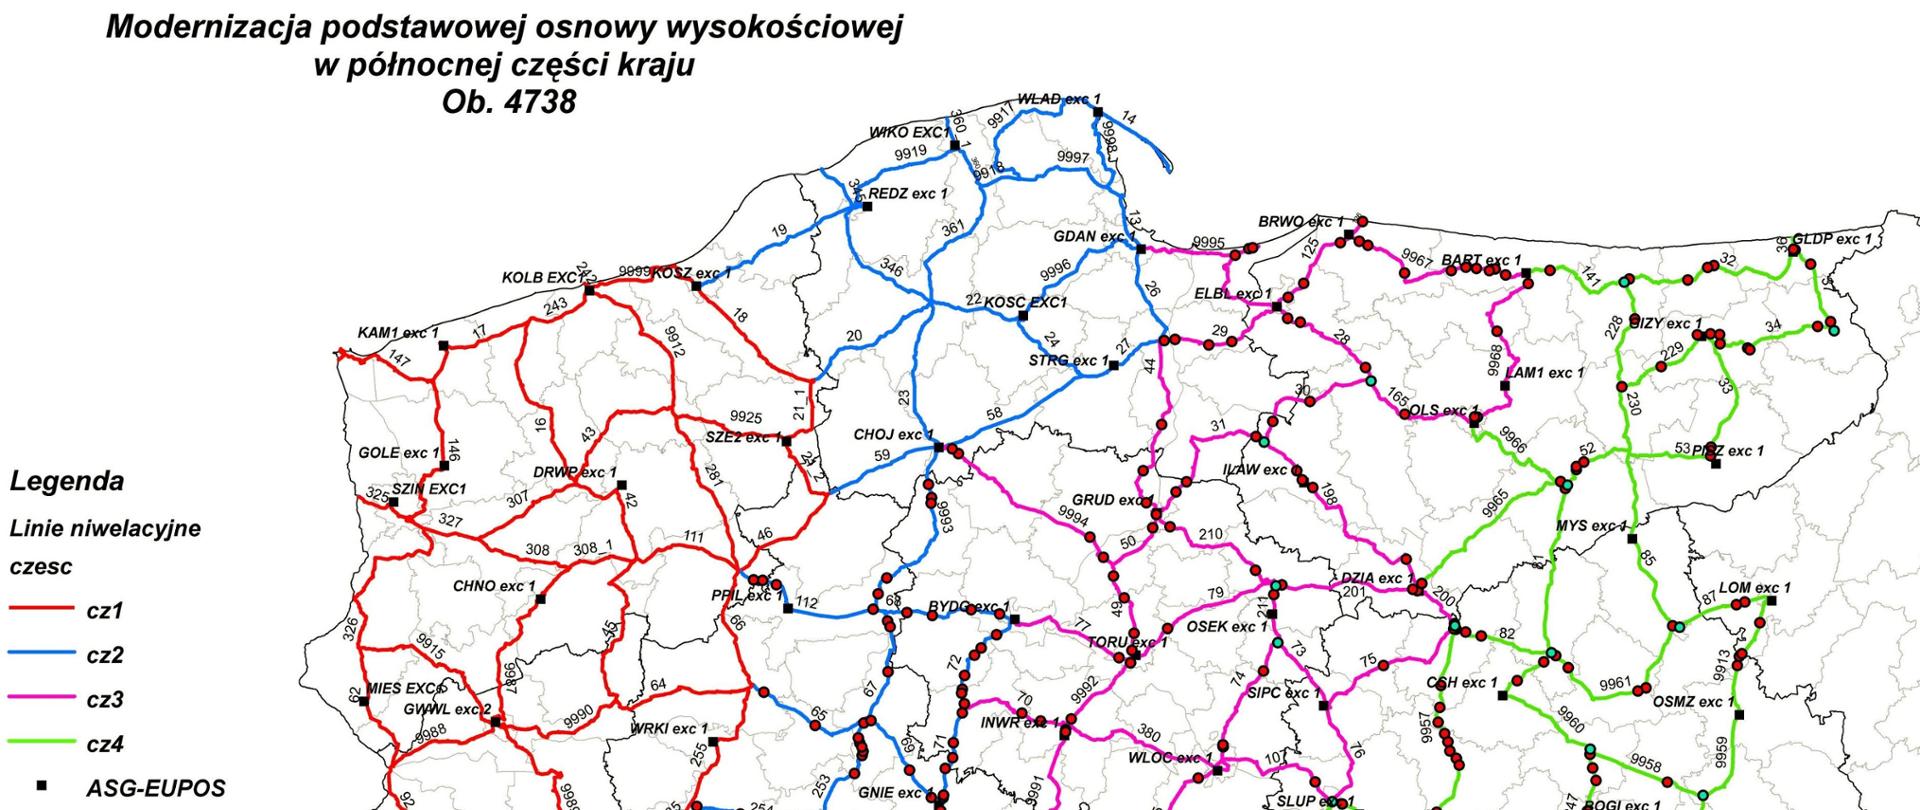 Ilustracja przedstawia fragment mapy Polski z przebiegiem linii niwelacyjnych planowanych do pomiaru w ramach poszczególnych części ogłoszonego postępowania przetargowego.